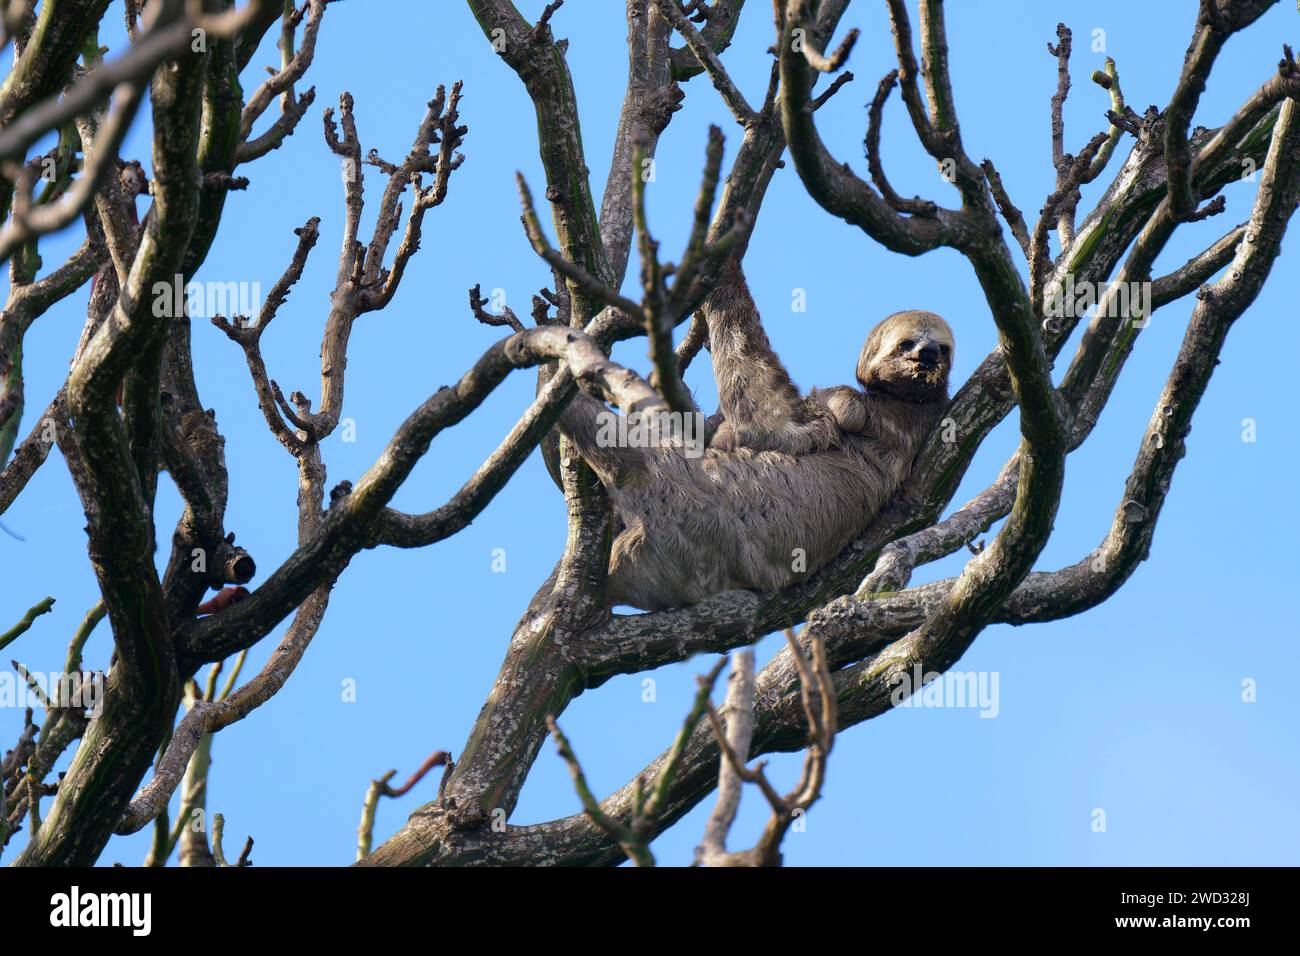 Brown ha gola a tre dita del piede Sloth, Bradypus variegatus, in un albero, bacino amazzonico, Brasile Foto Stock